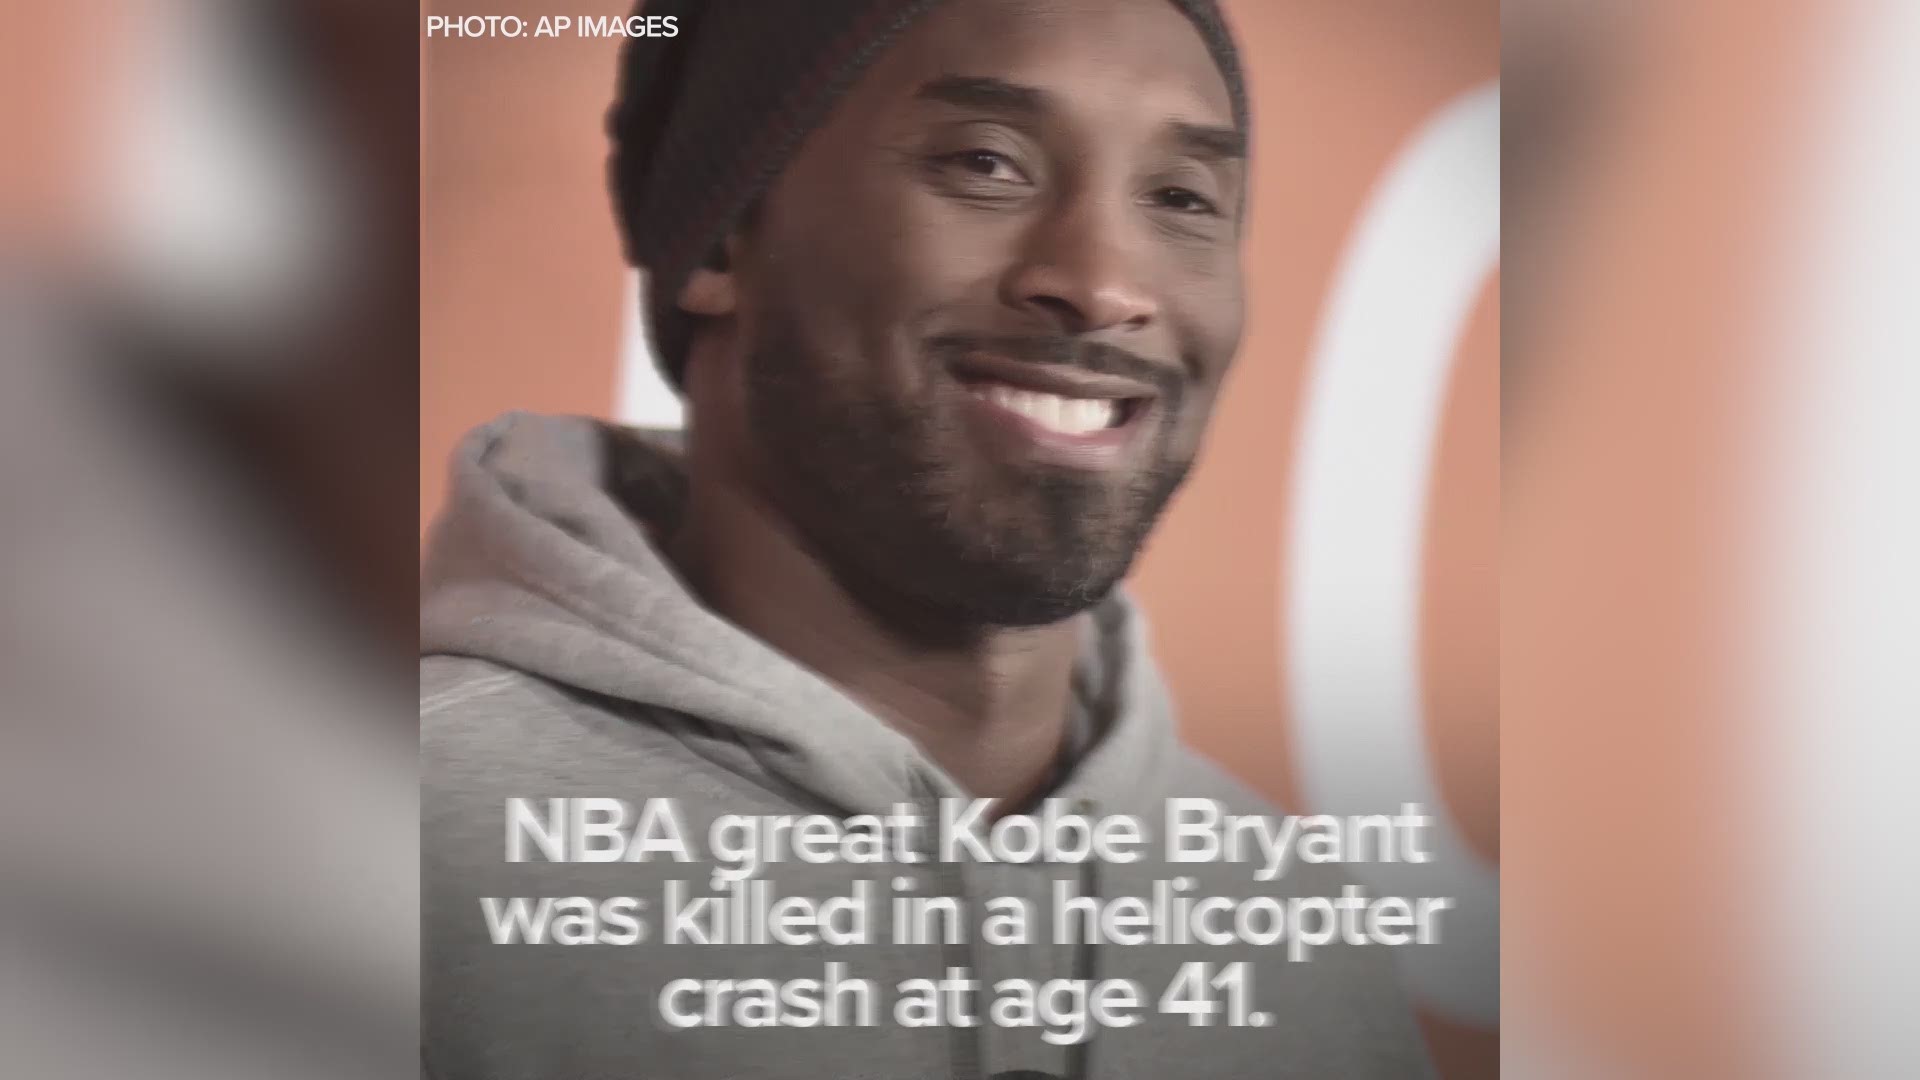 Lakers: Watch Behind the Scenes of Kobe Bryant's Last Game